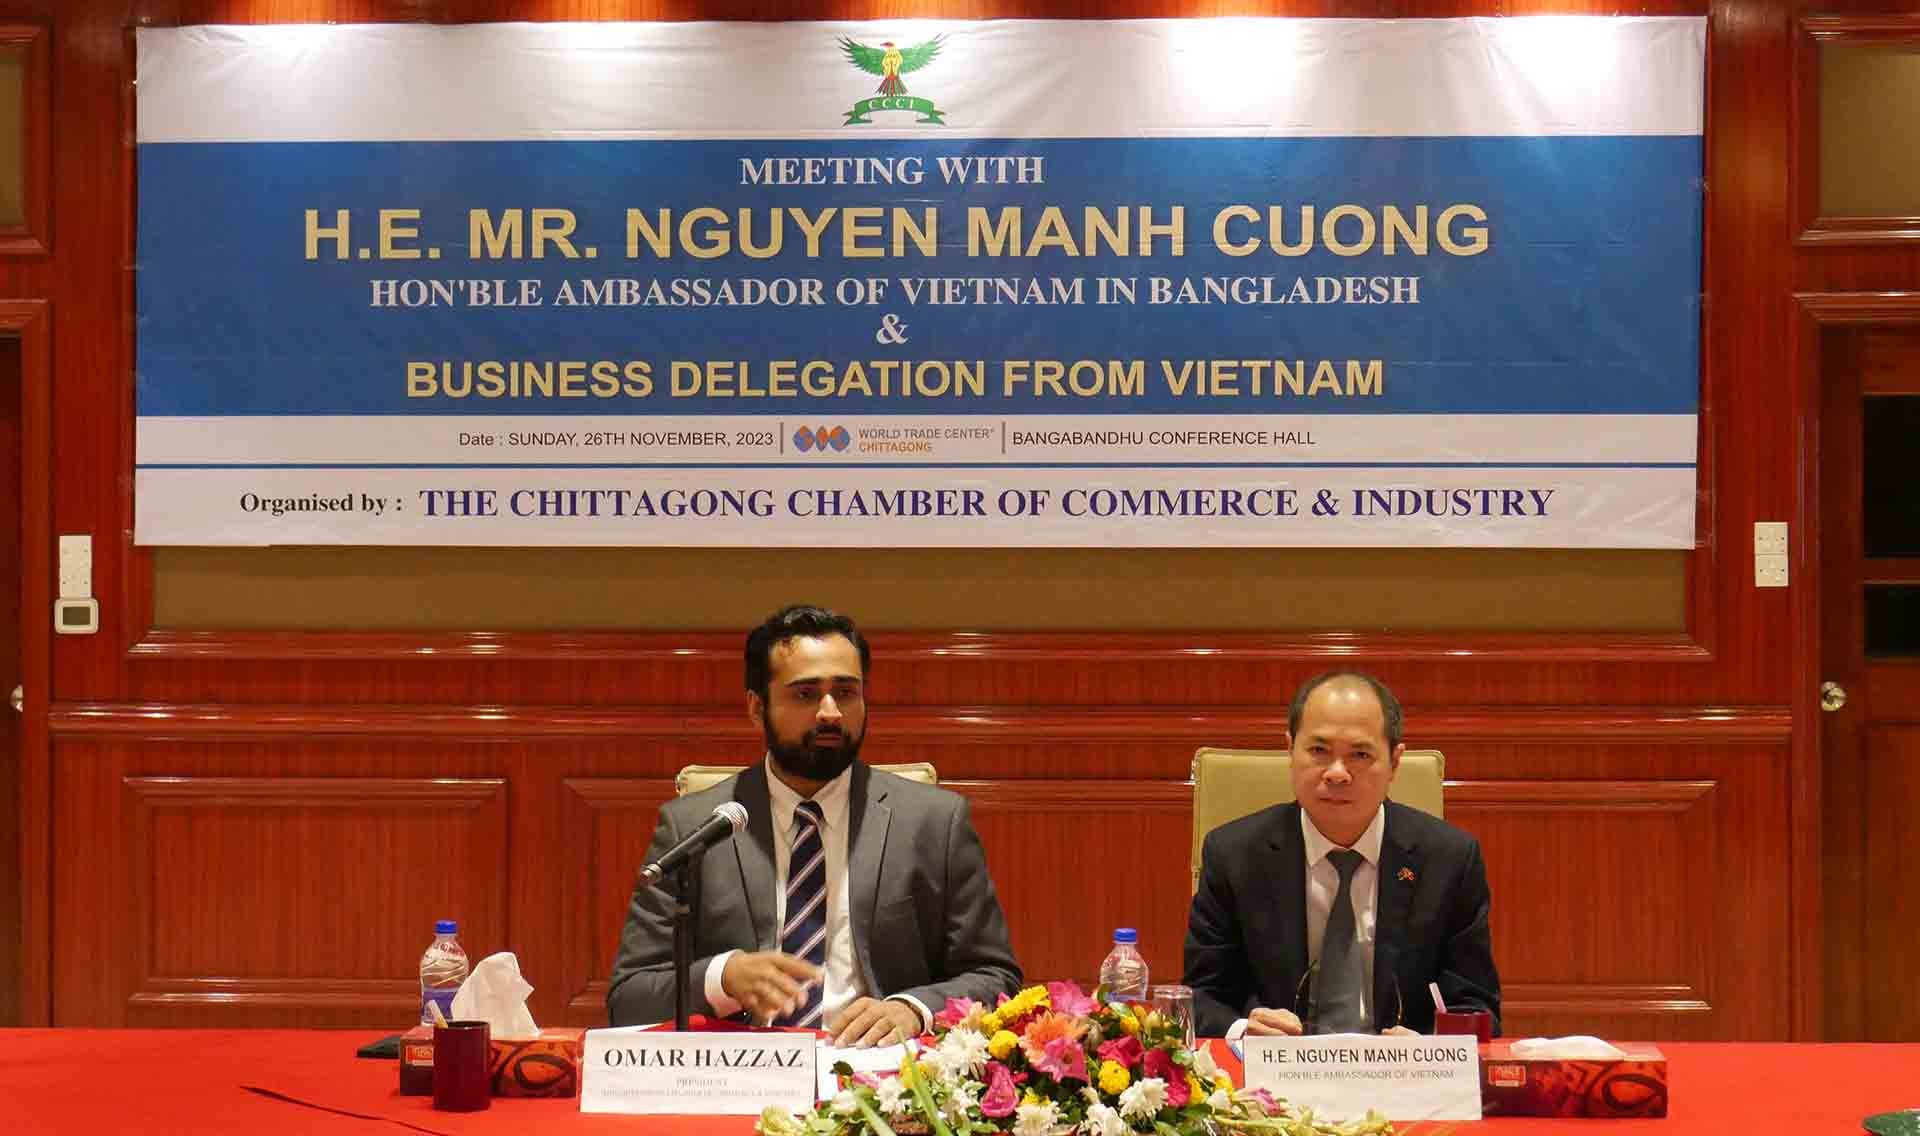 Đại sứ Nguyễn Mạnh Cường và Chủ tịch CCCI Omar Hazzaz đồng chủ trì Diễn đàn chính sách xúc tiến thương mại và đầu tư giữa nhóm doanh nghiệp Việt Nam và các doanh nghiệp thành viên của CCCI.